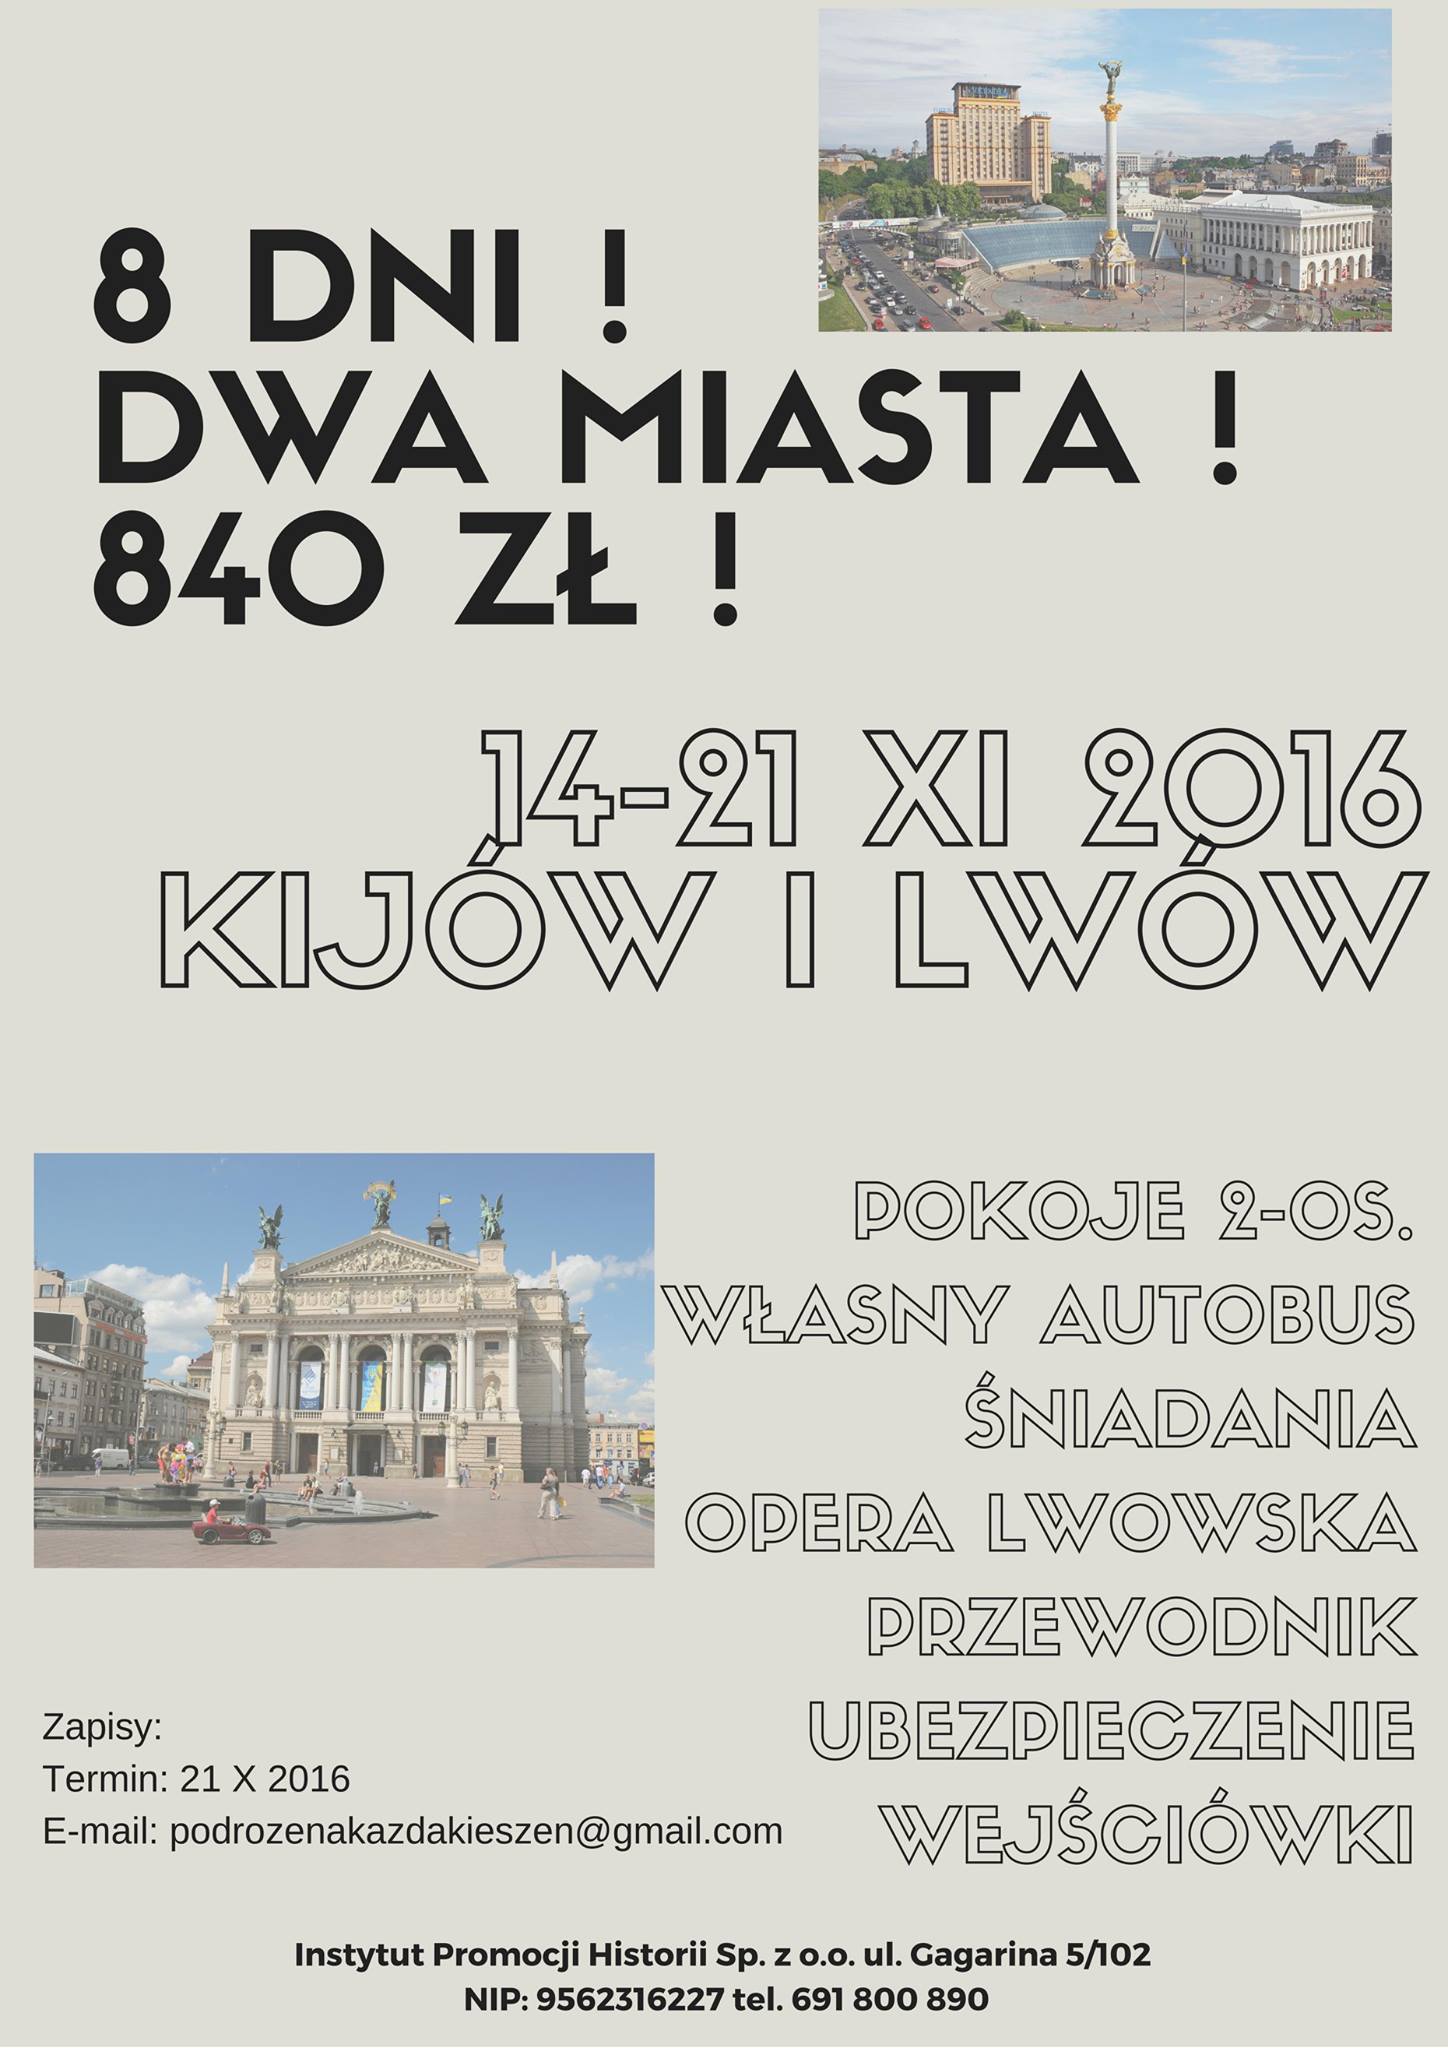 Ukraina – Kijów i Lwów – 14-21.11.2016